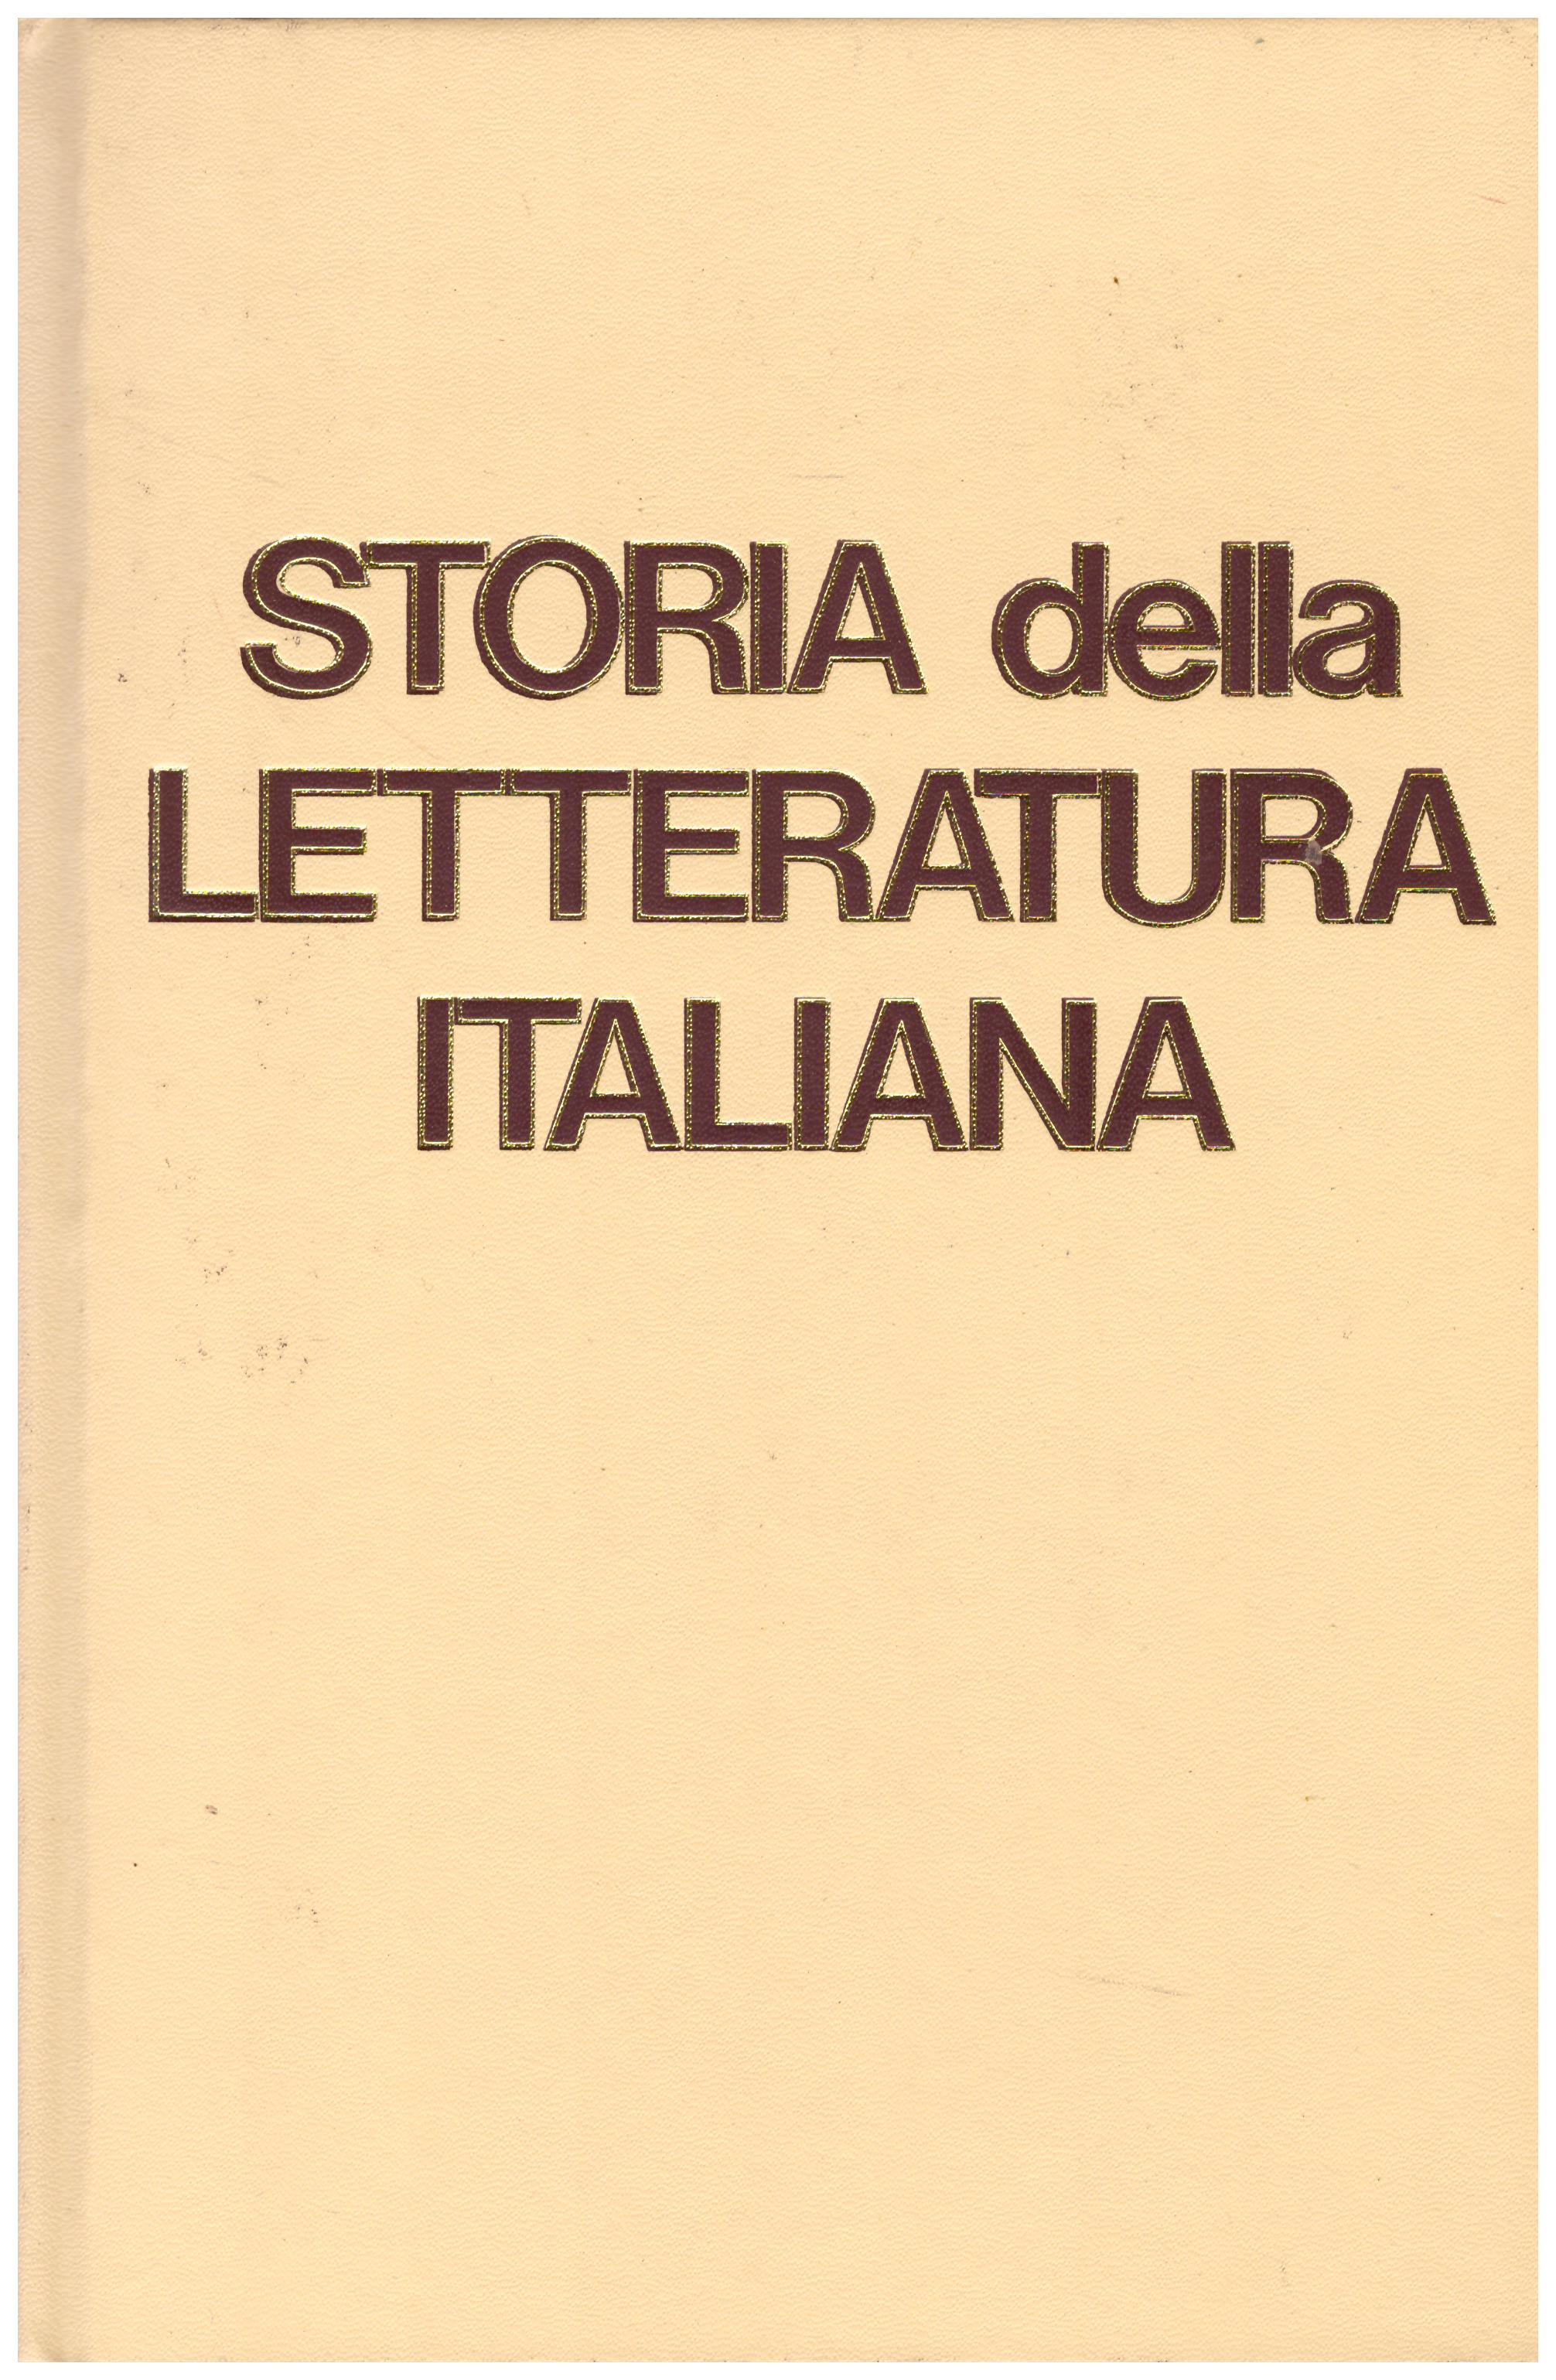 Titolo: Storia della letteratura italiana, opera completa in 4 volumi  Autore: AA.VV.  Editore: European Book, Milano 1988